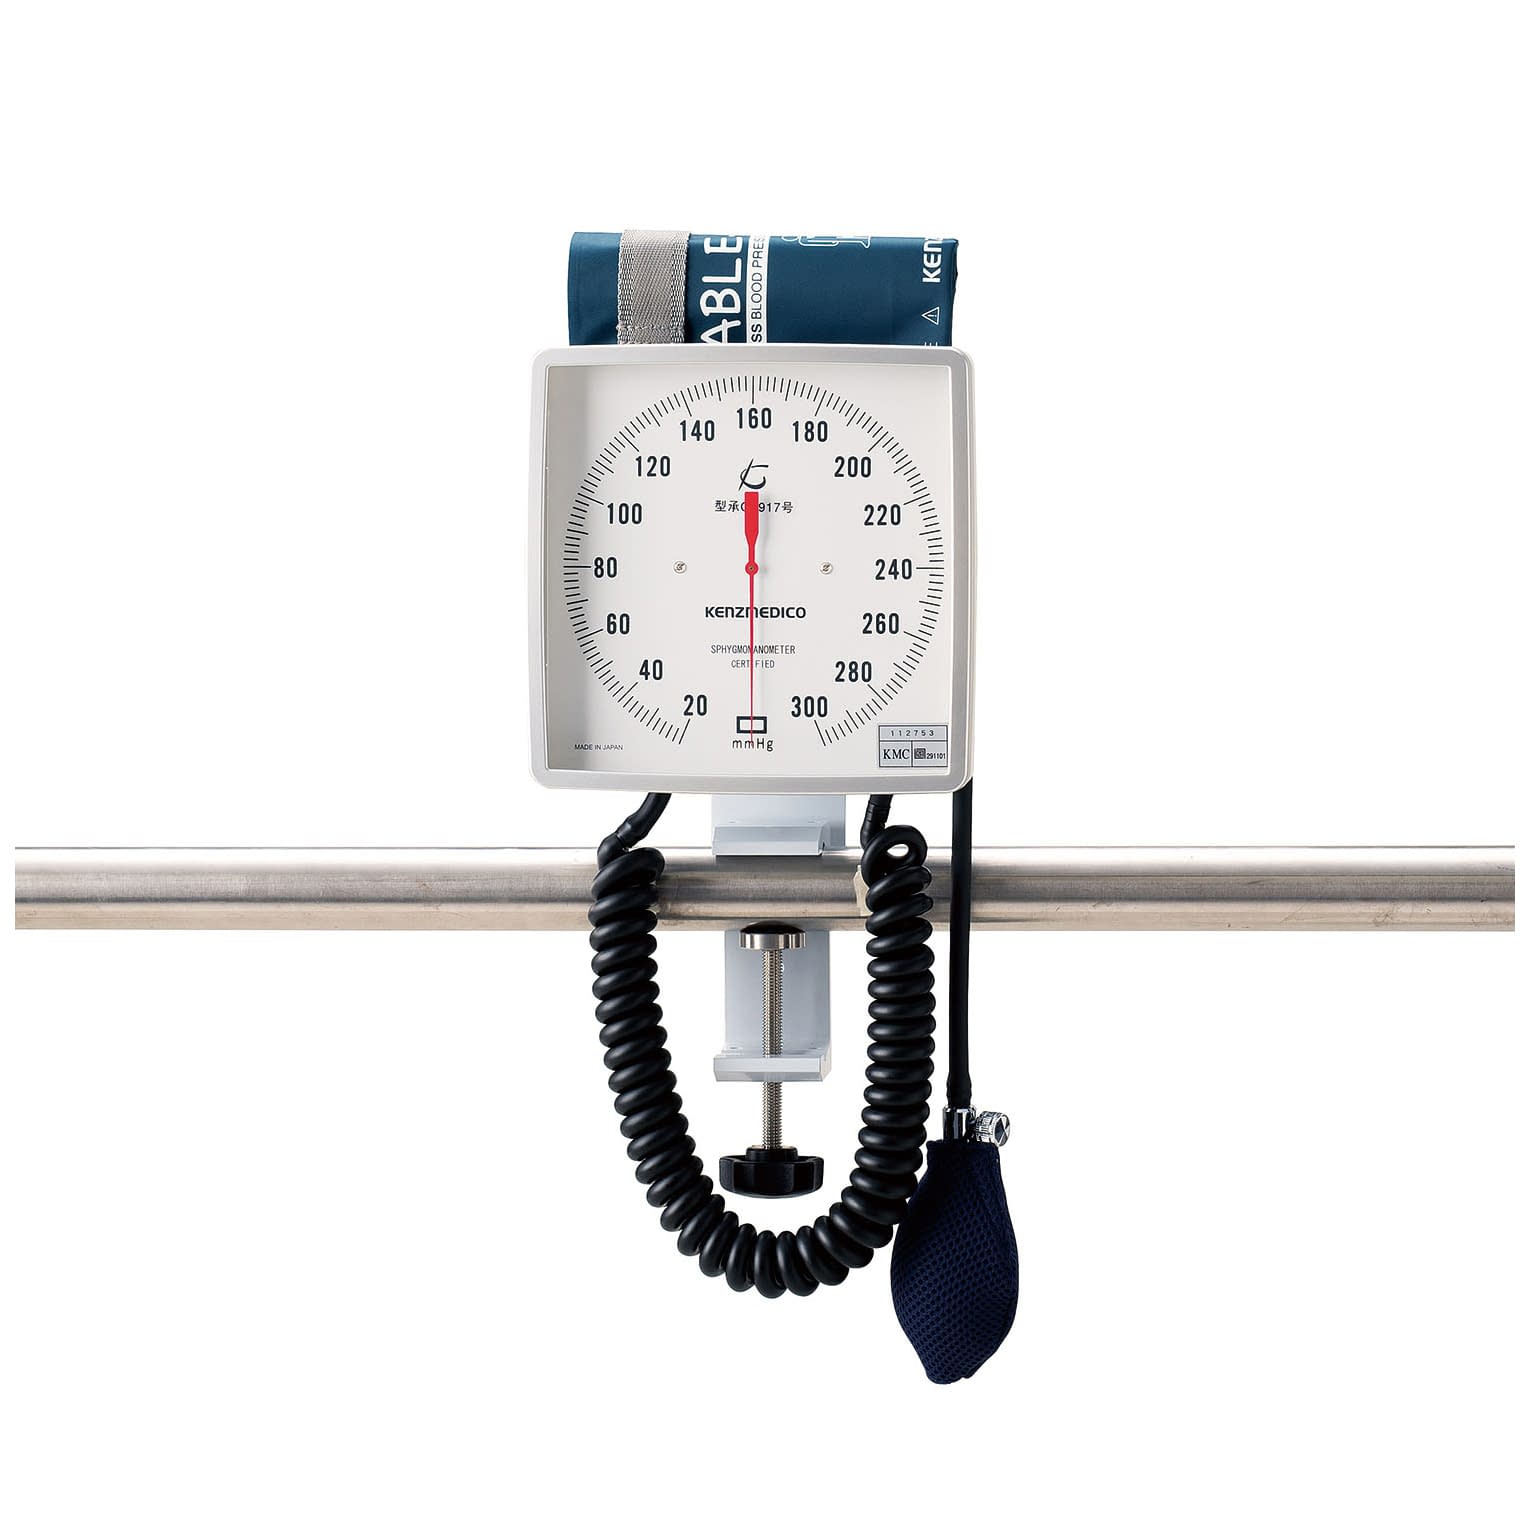 (24-3264-00)大型アネロイド血圧計（クランプ型） NO.541(ﾎﾜｲﾄ)Wｶﾌ ｵｵｶﾞﾀｱﾈﾛｲﾄﾞｹﾂｱﾂｹｲ(ケンツメディコ)【1台単位】【2019年カタログ商品】